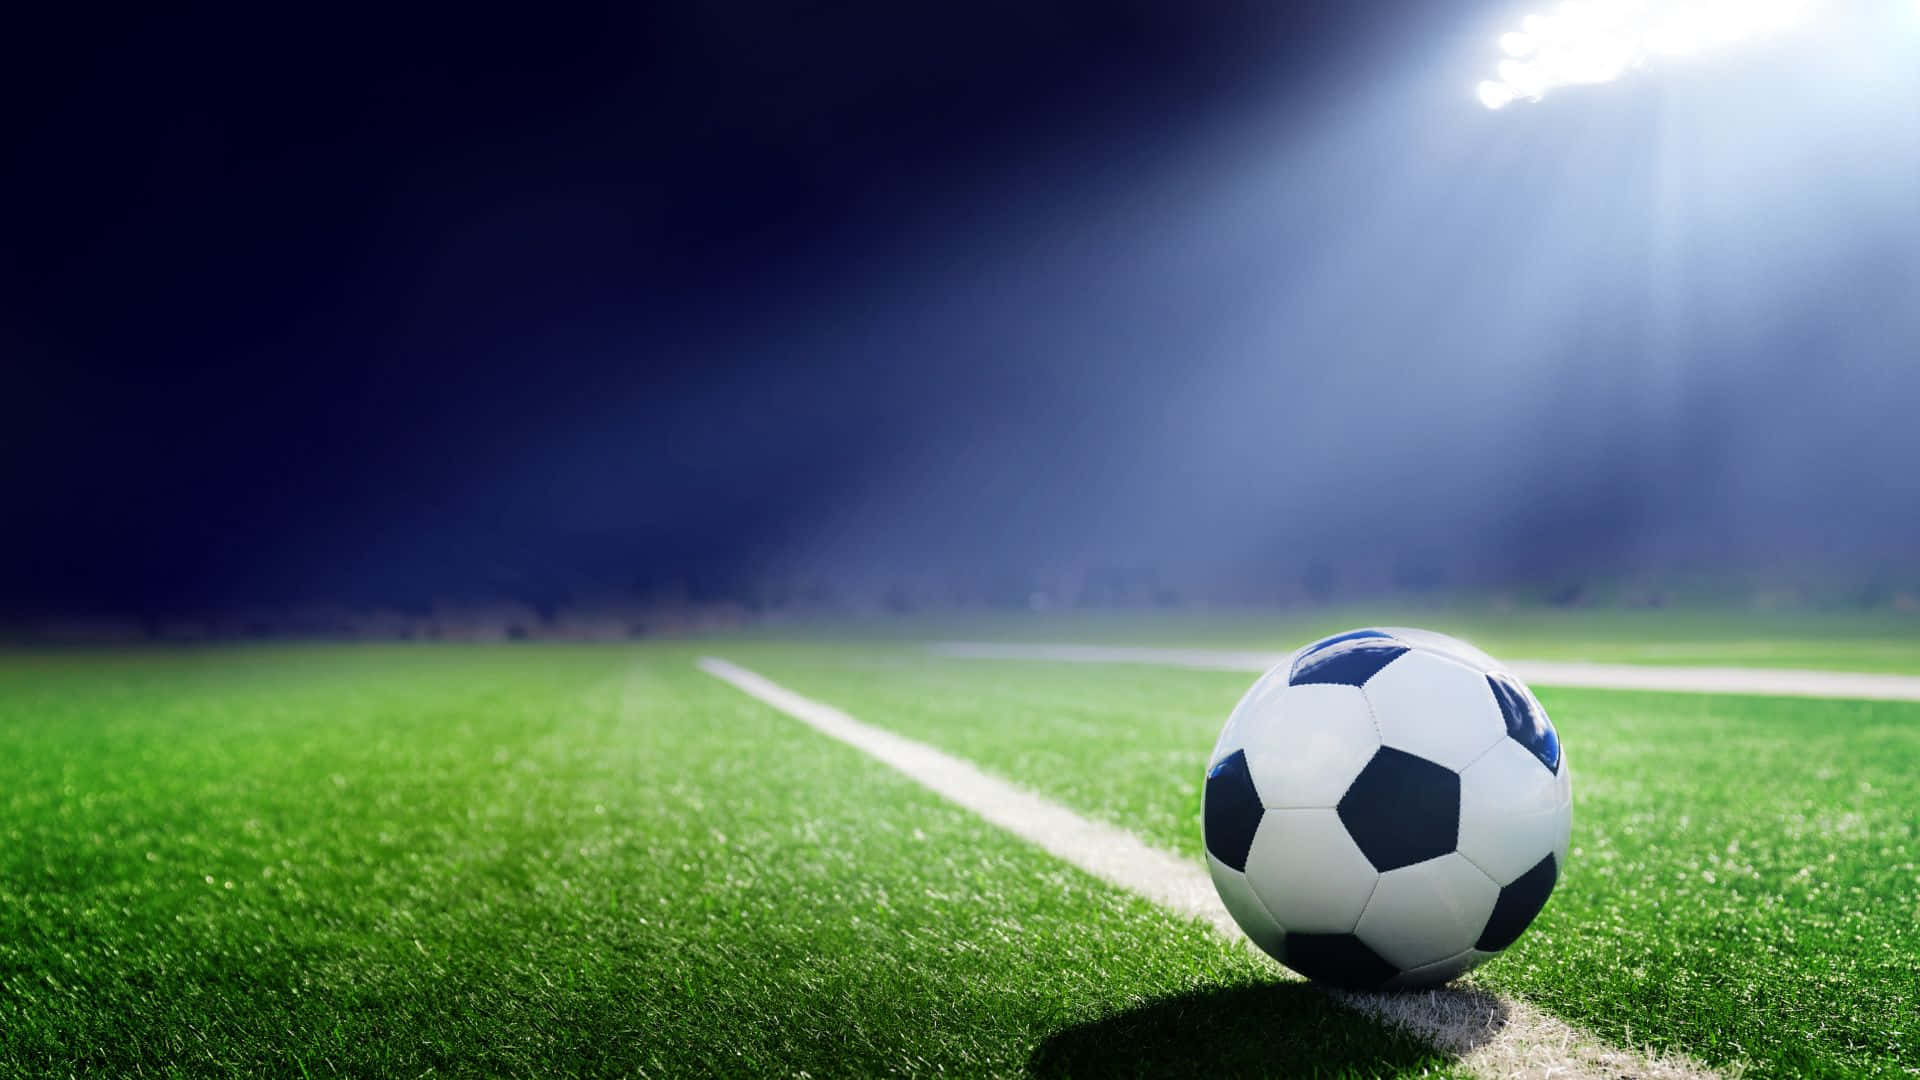 A thrilling soccer match under bright stadium lights